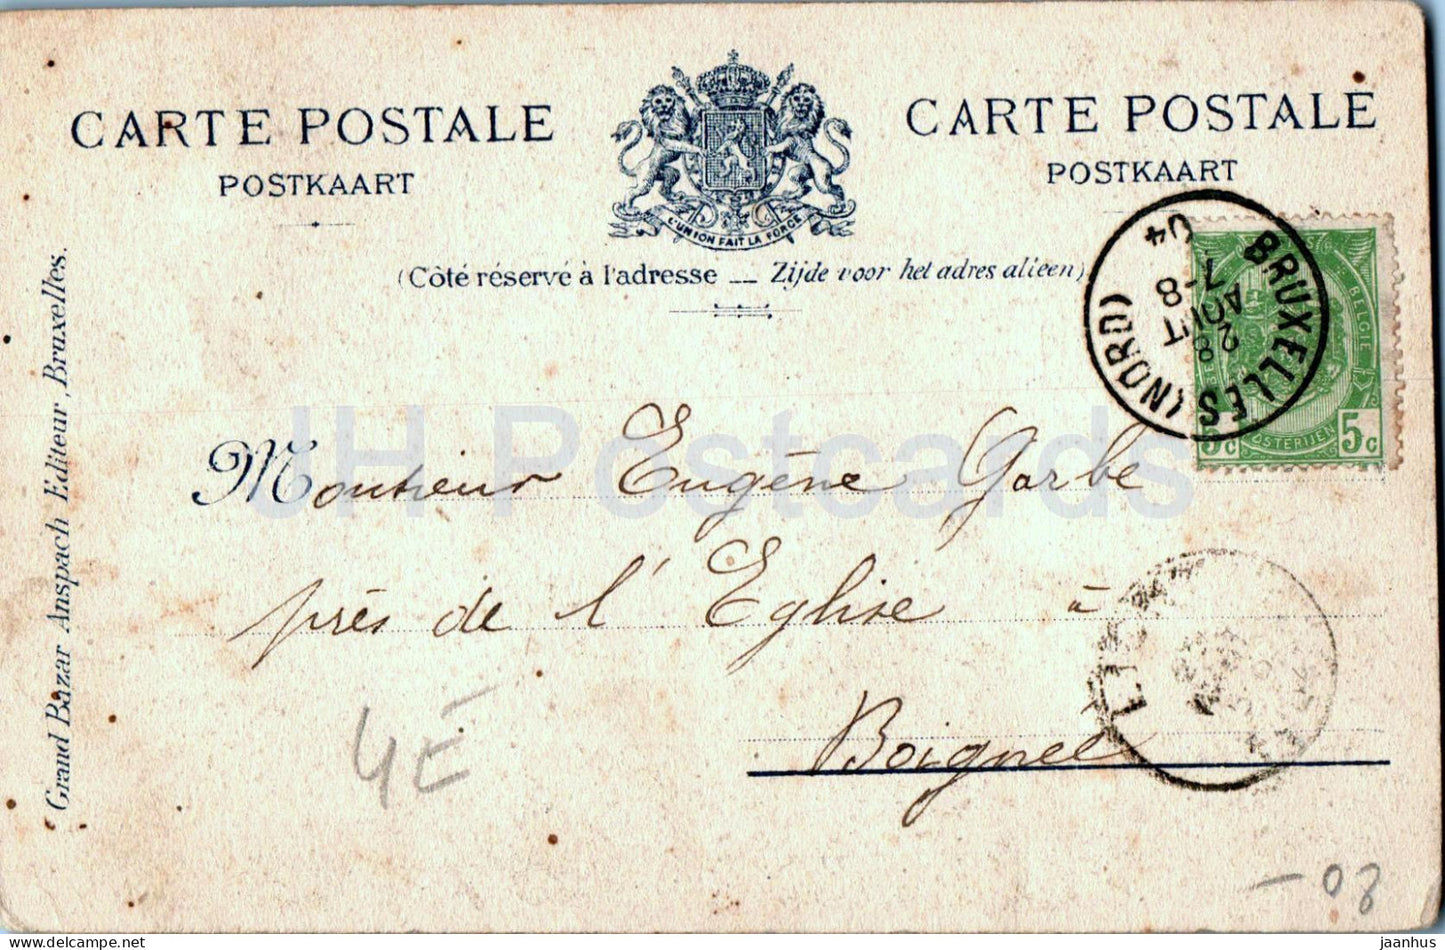 Bruxelles - Brussels - Manneken Pis - Boy - 18 - old postcard - 1904 - Belgium - used